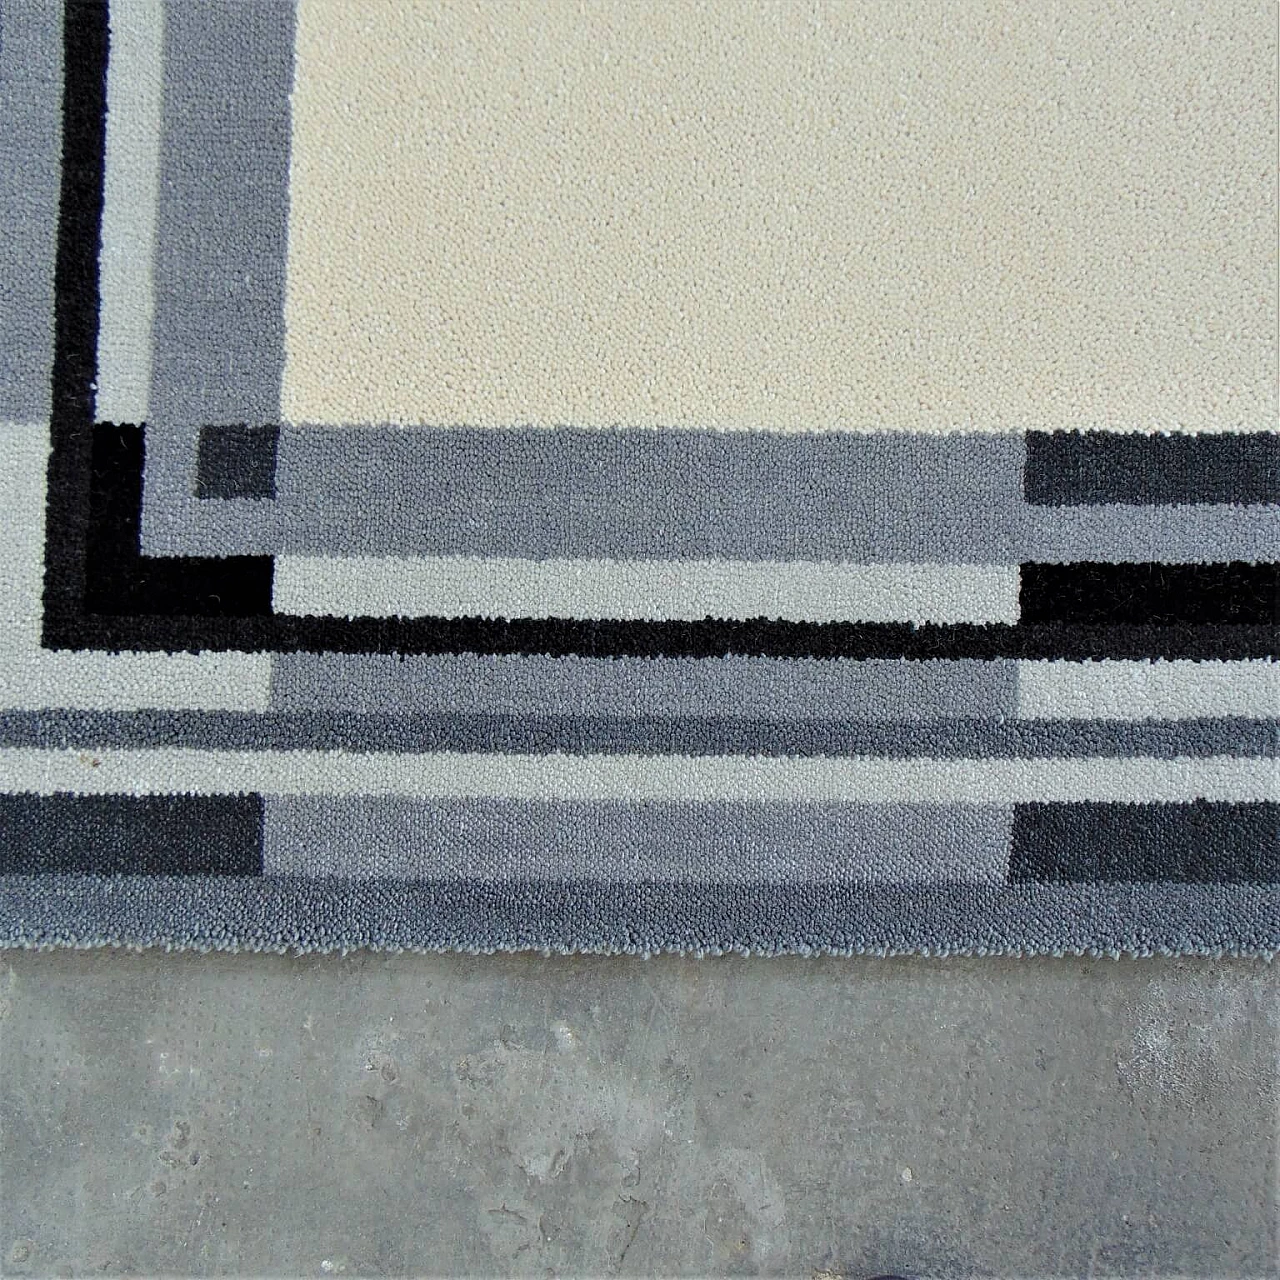 Tappeto danese EGE Rya, Axminster Rug, in pura lana, color crema con bordo scuro, anni '80 1069310